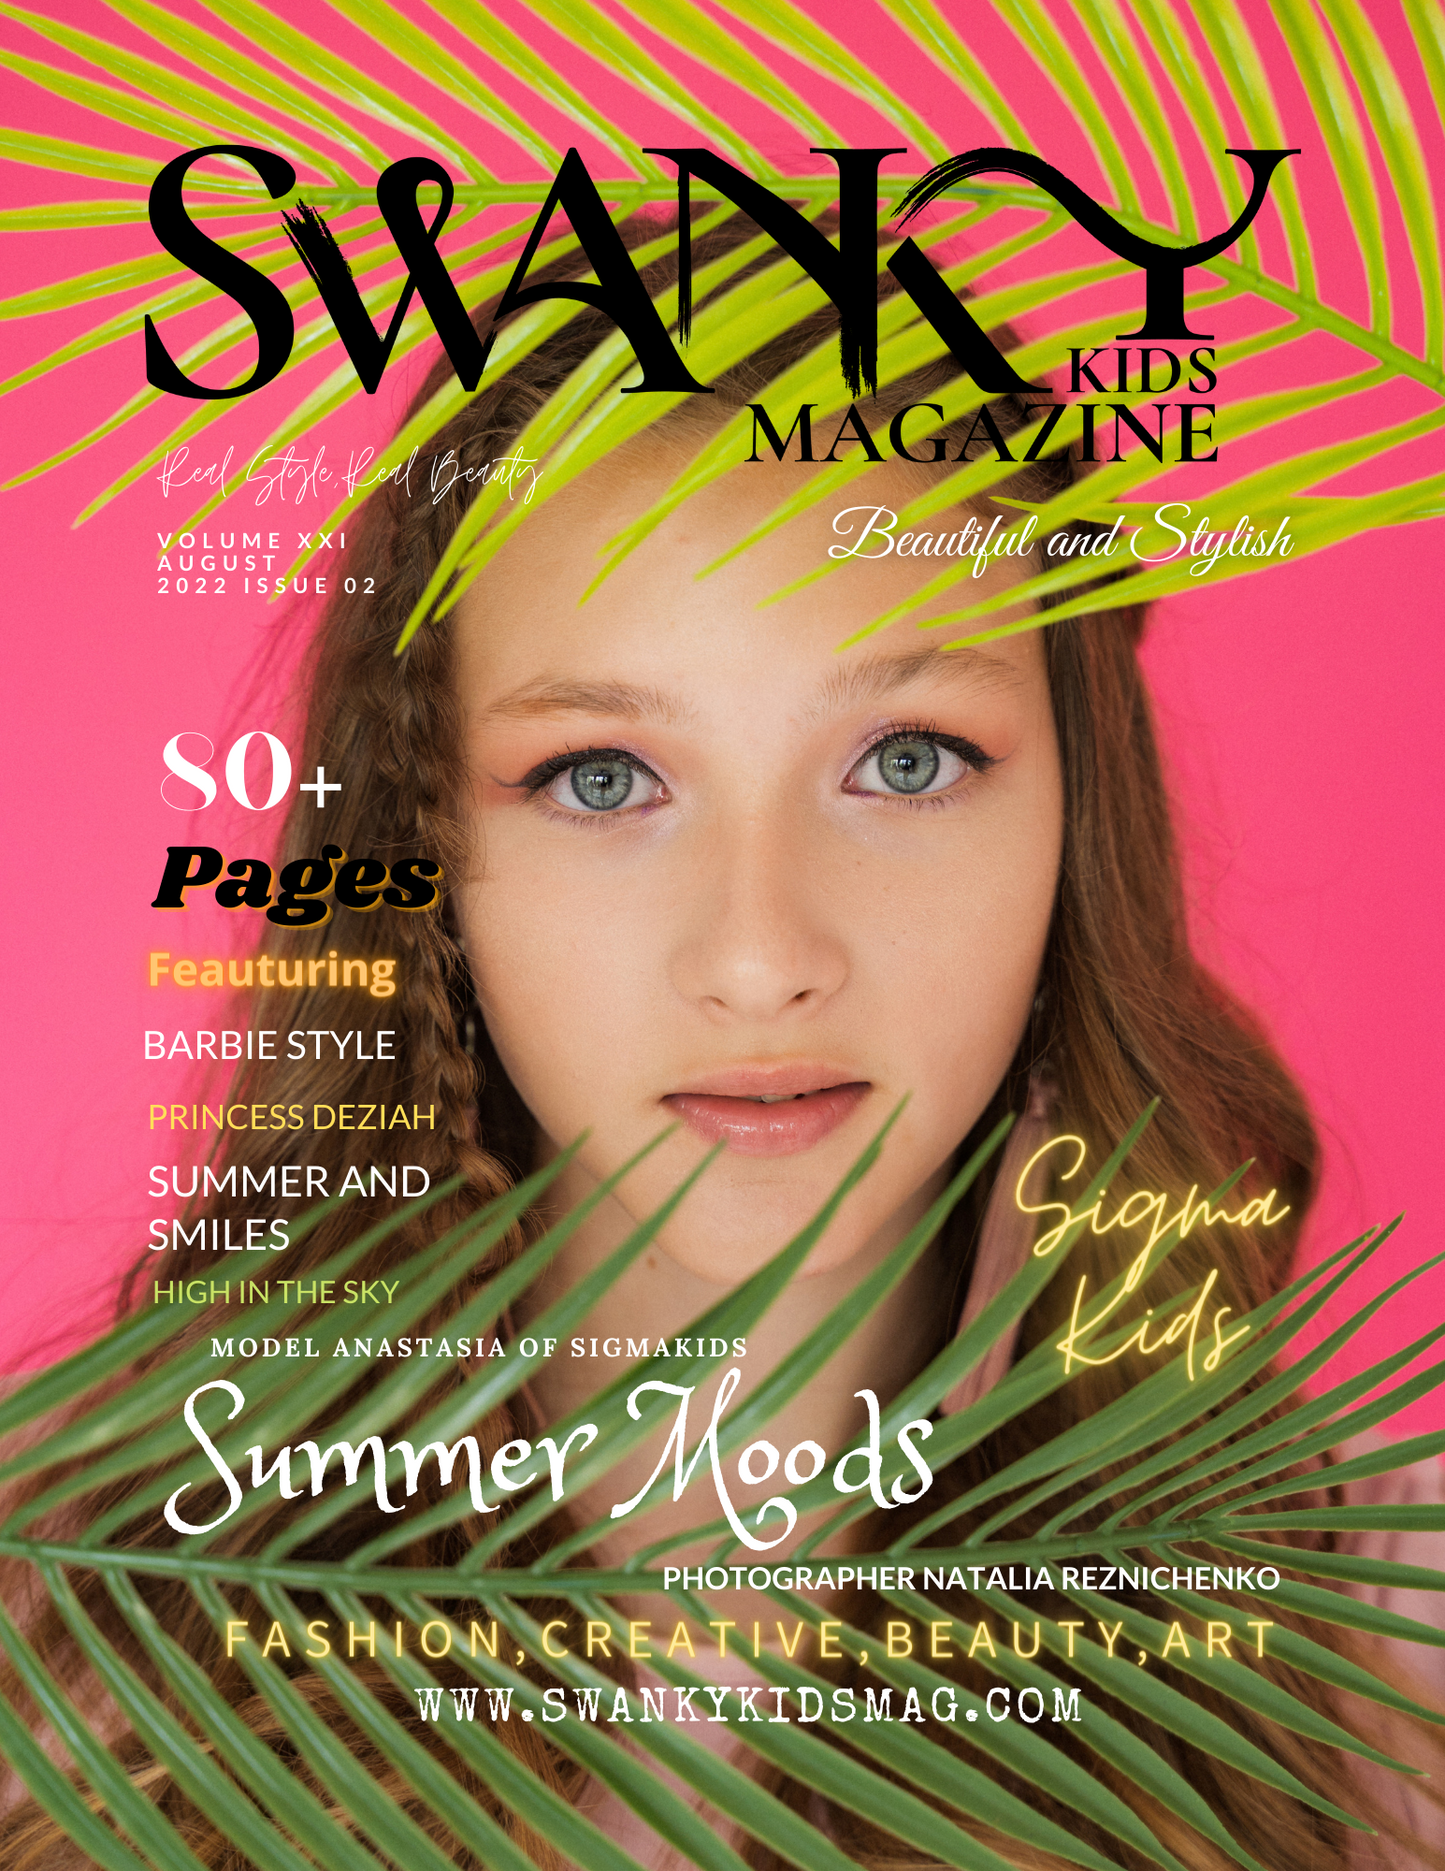 Swanky Kids Magazine AUGUST 2022 VOL XXI Issue 2